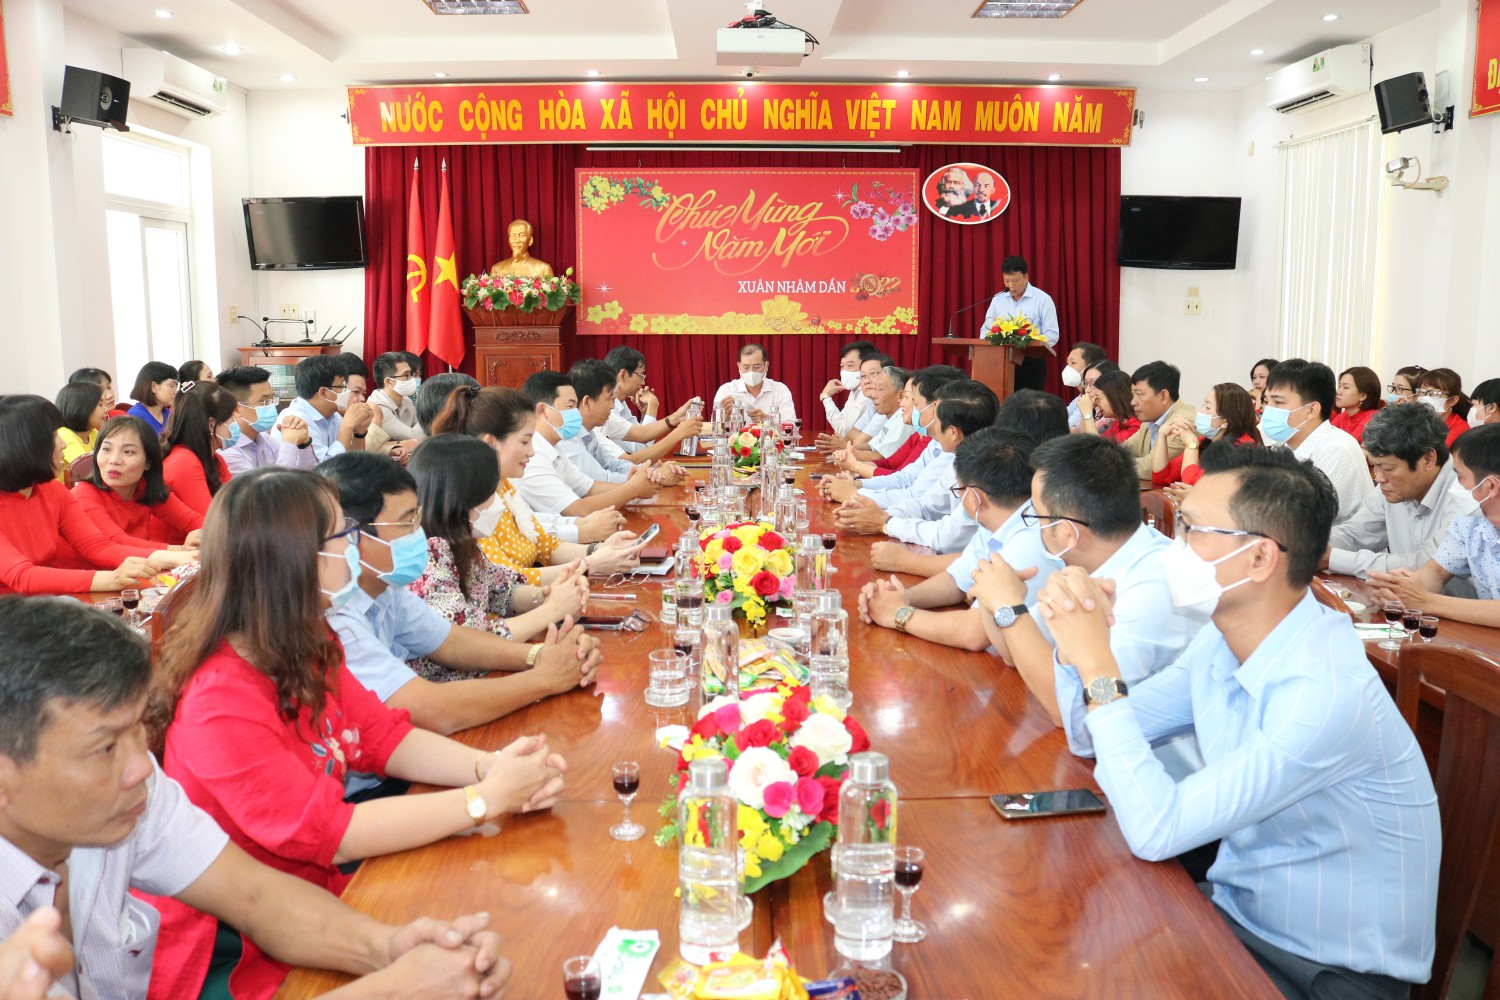 Đồng chí Trần Trung Định, Chánh Văn phòng Sở báo cáo tại buổi gặp mặt